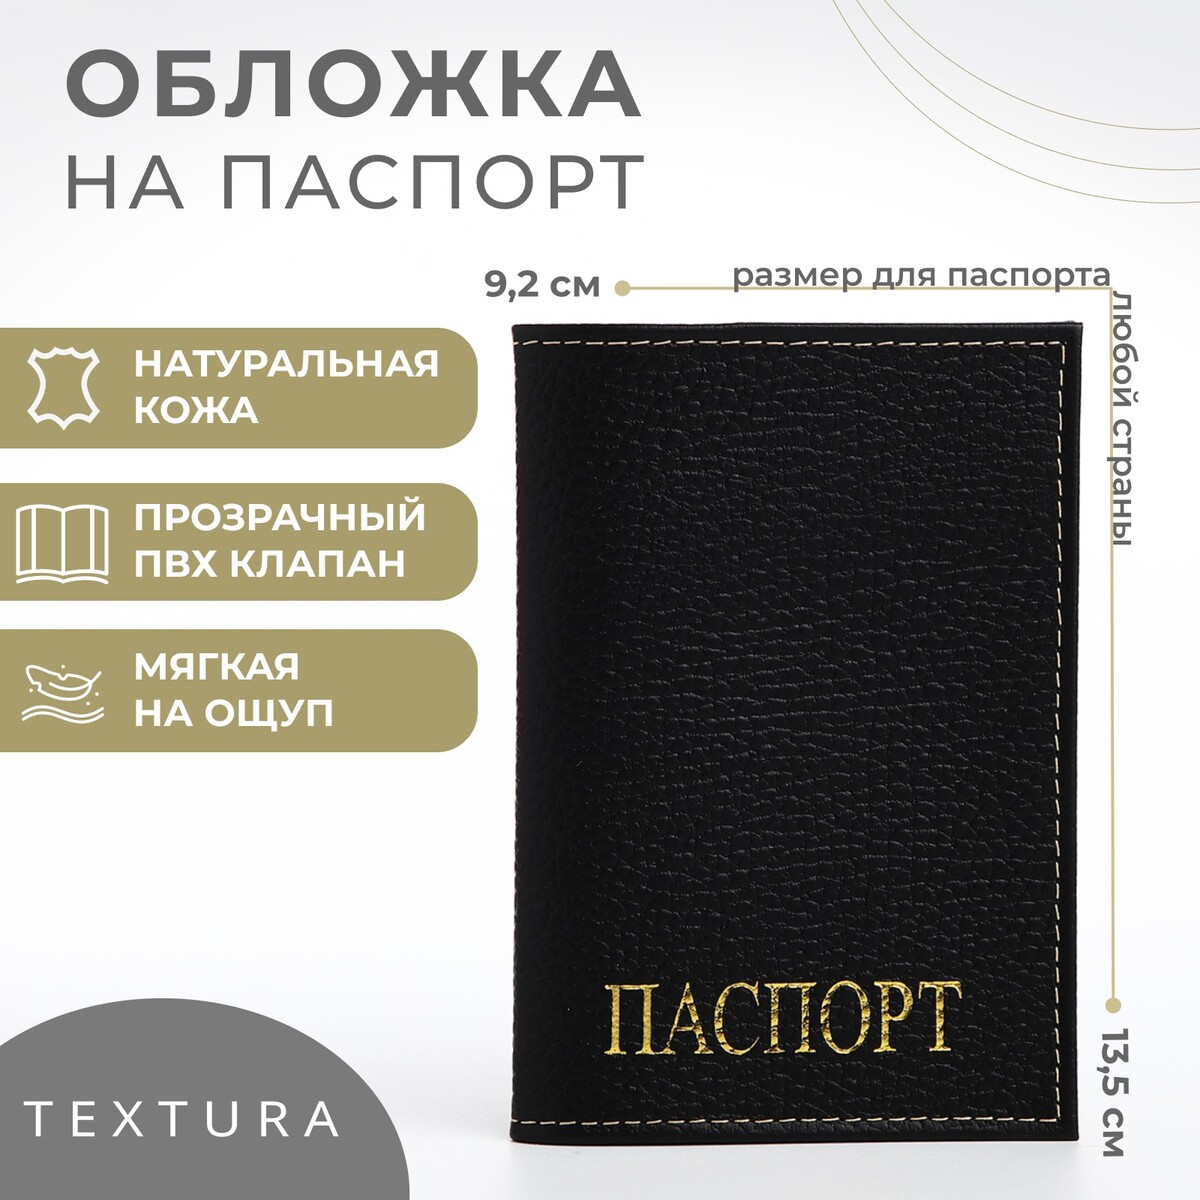 Обложка для паспорта textura, цвет черный обложка для паспорта textura